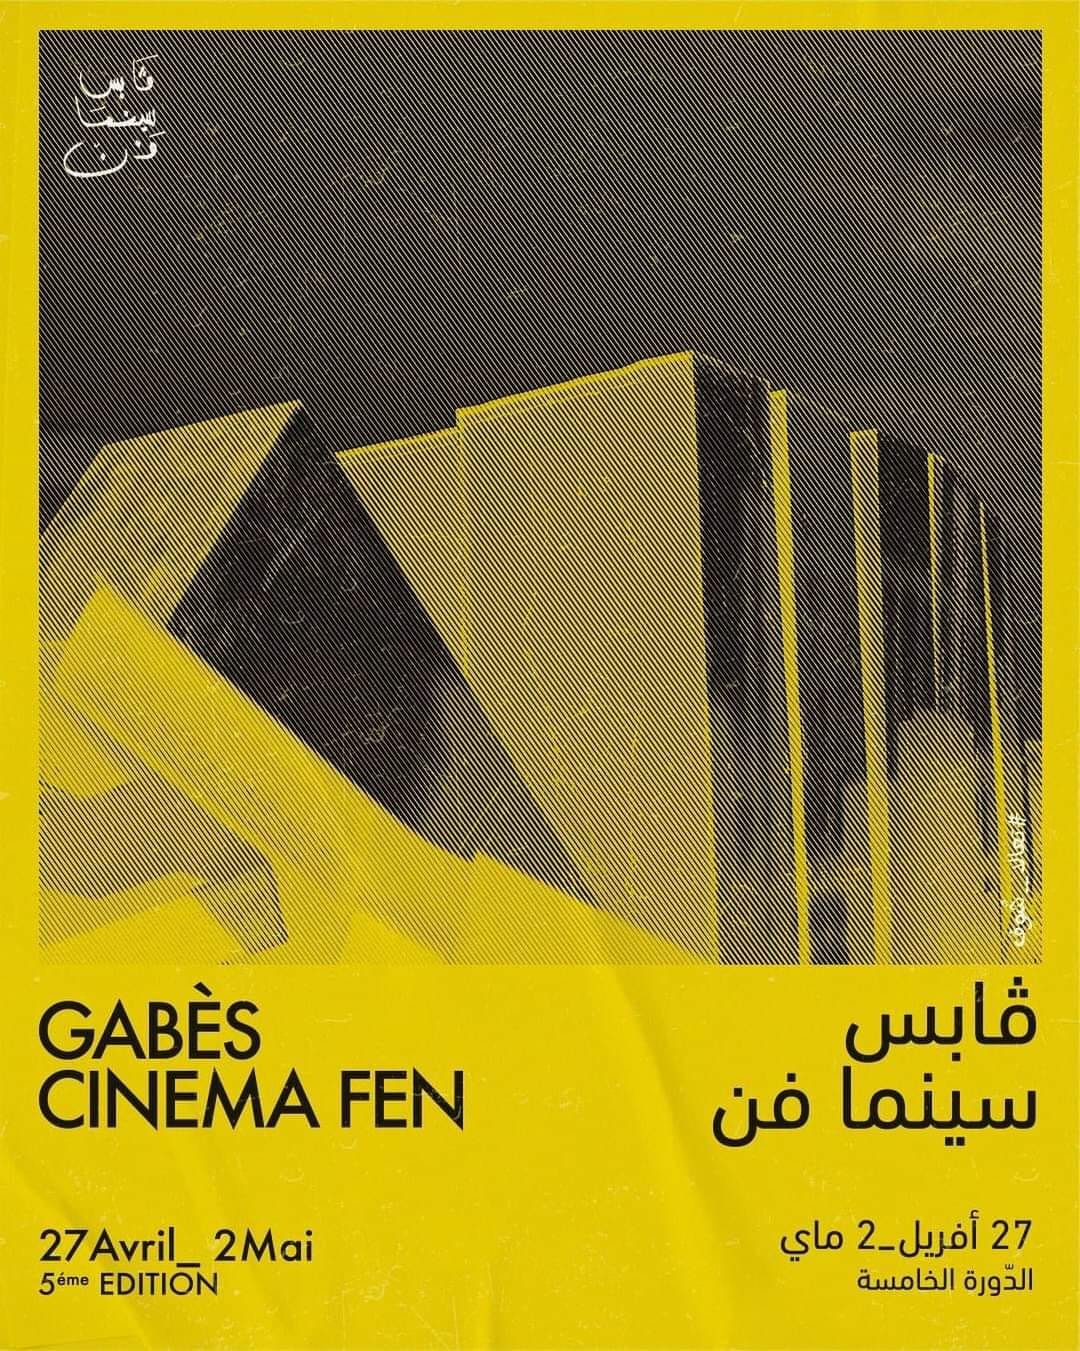 مهرجان "قابس سينما فن" في دورته الخامسة: عشرة أفلام طويلة و12 فيلما قصيرا في المسابقة الرسمية